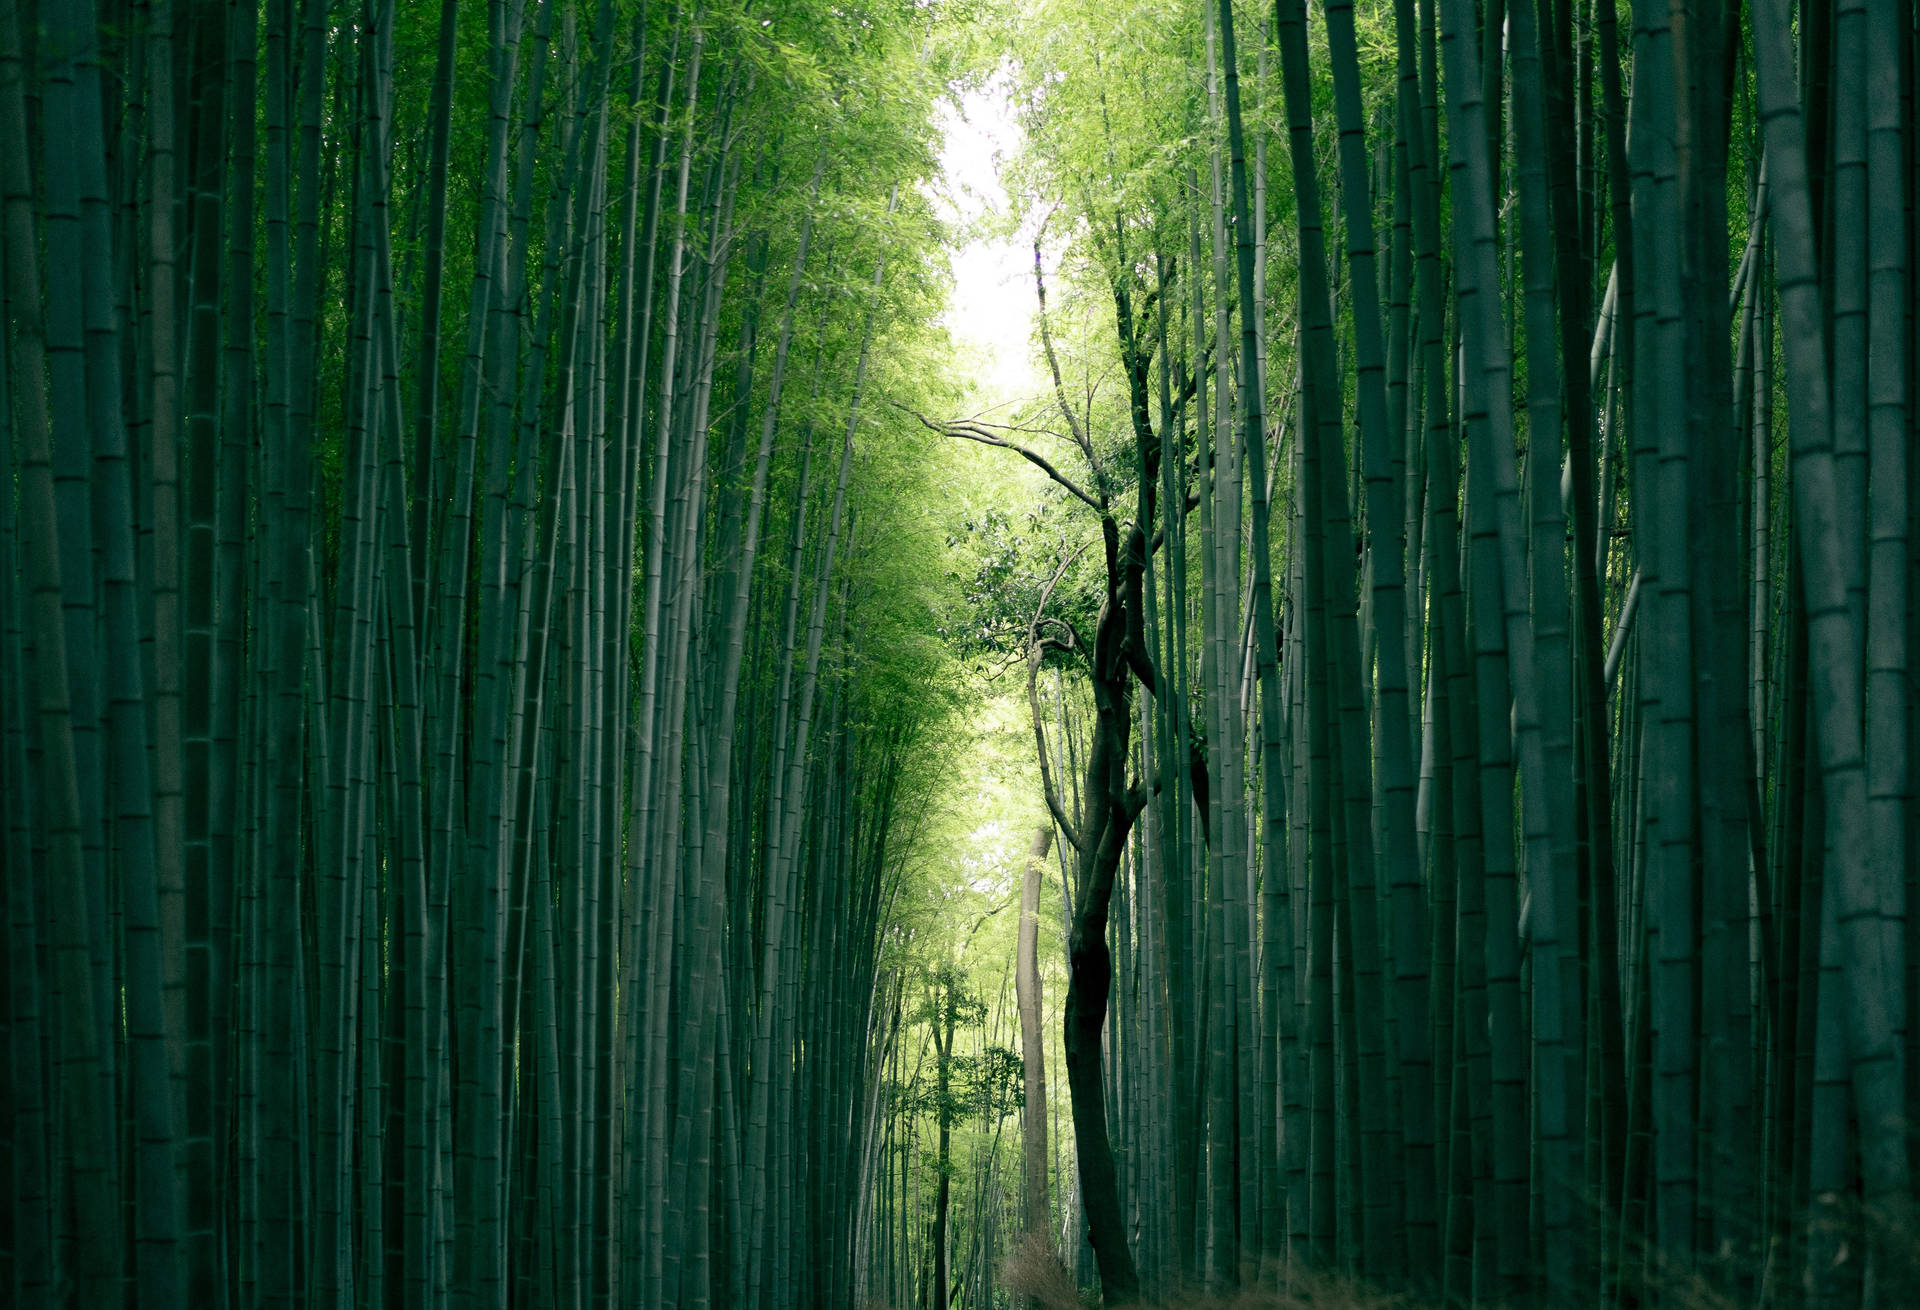 Full 4K Desktop Bamboo Grove Wallpaper